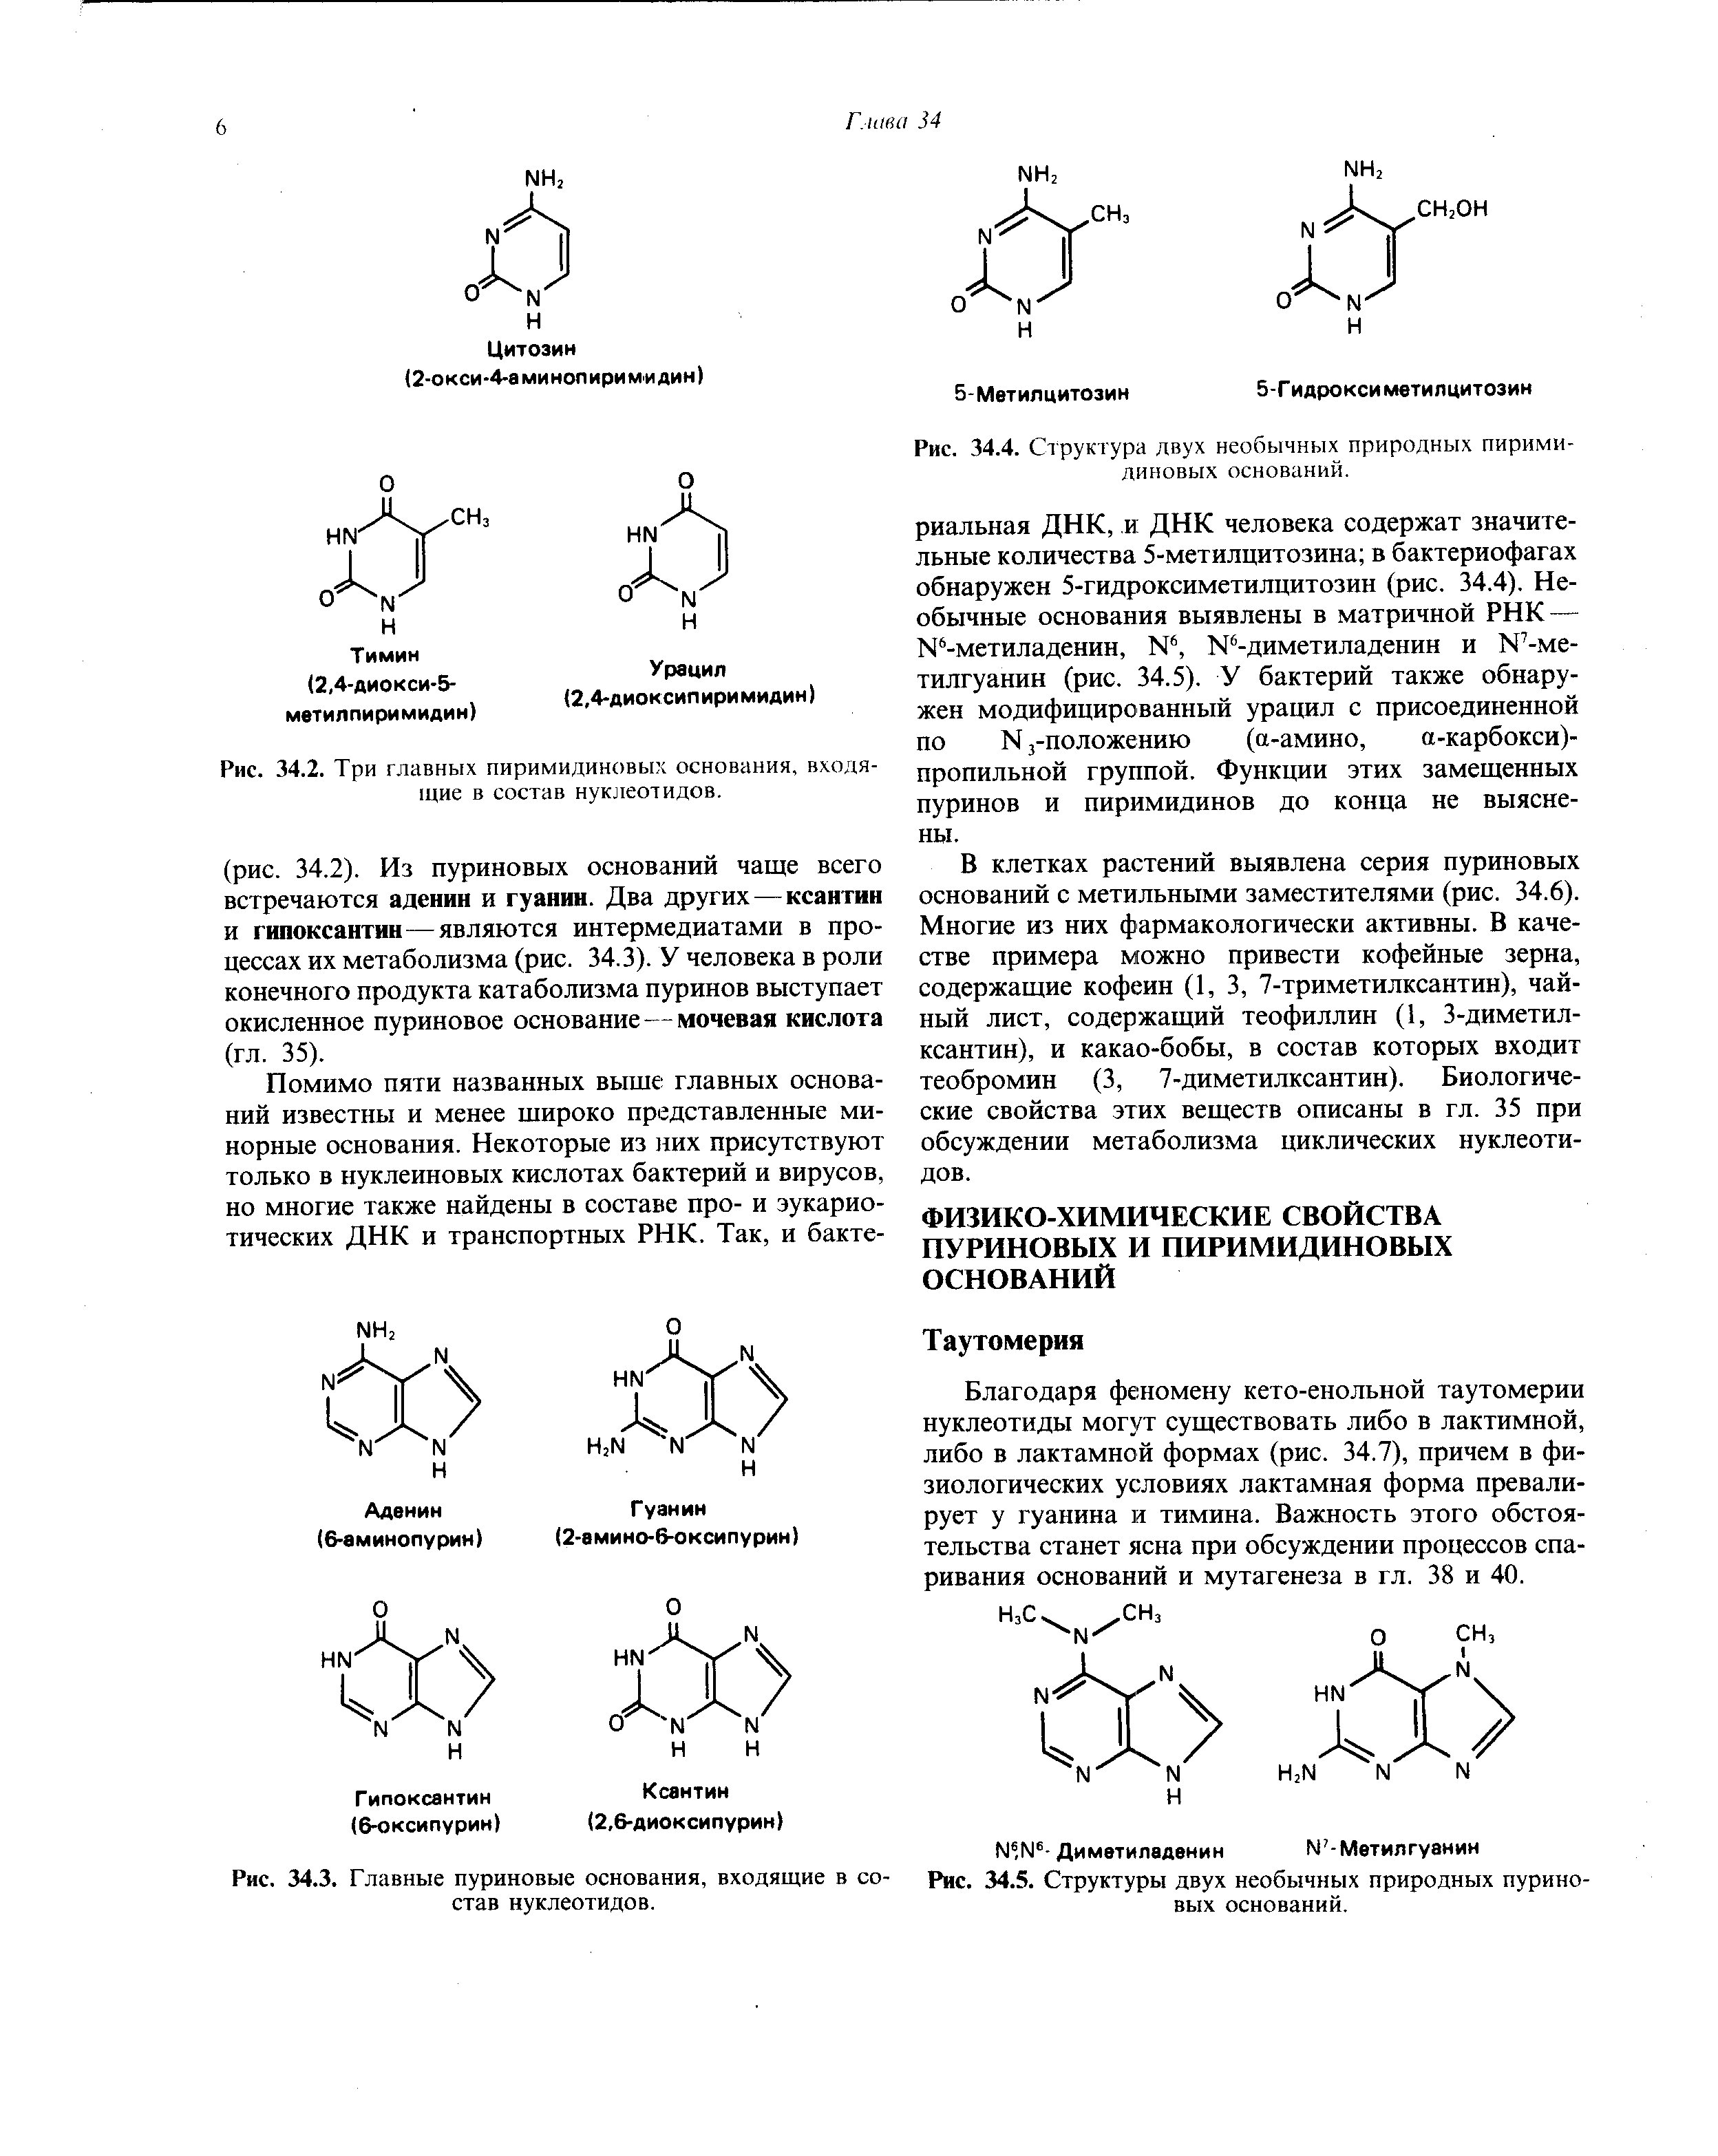 Рис. 34.3. Главные пуриновые основания, входящие в состав нуклеотидов.